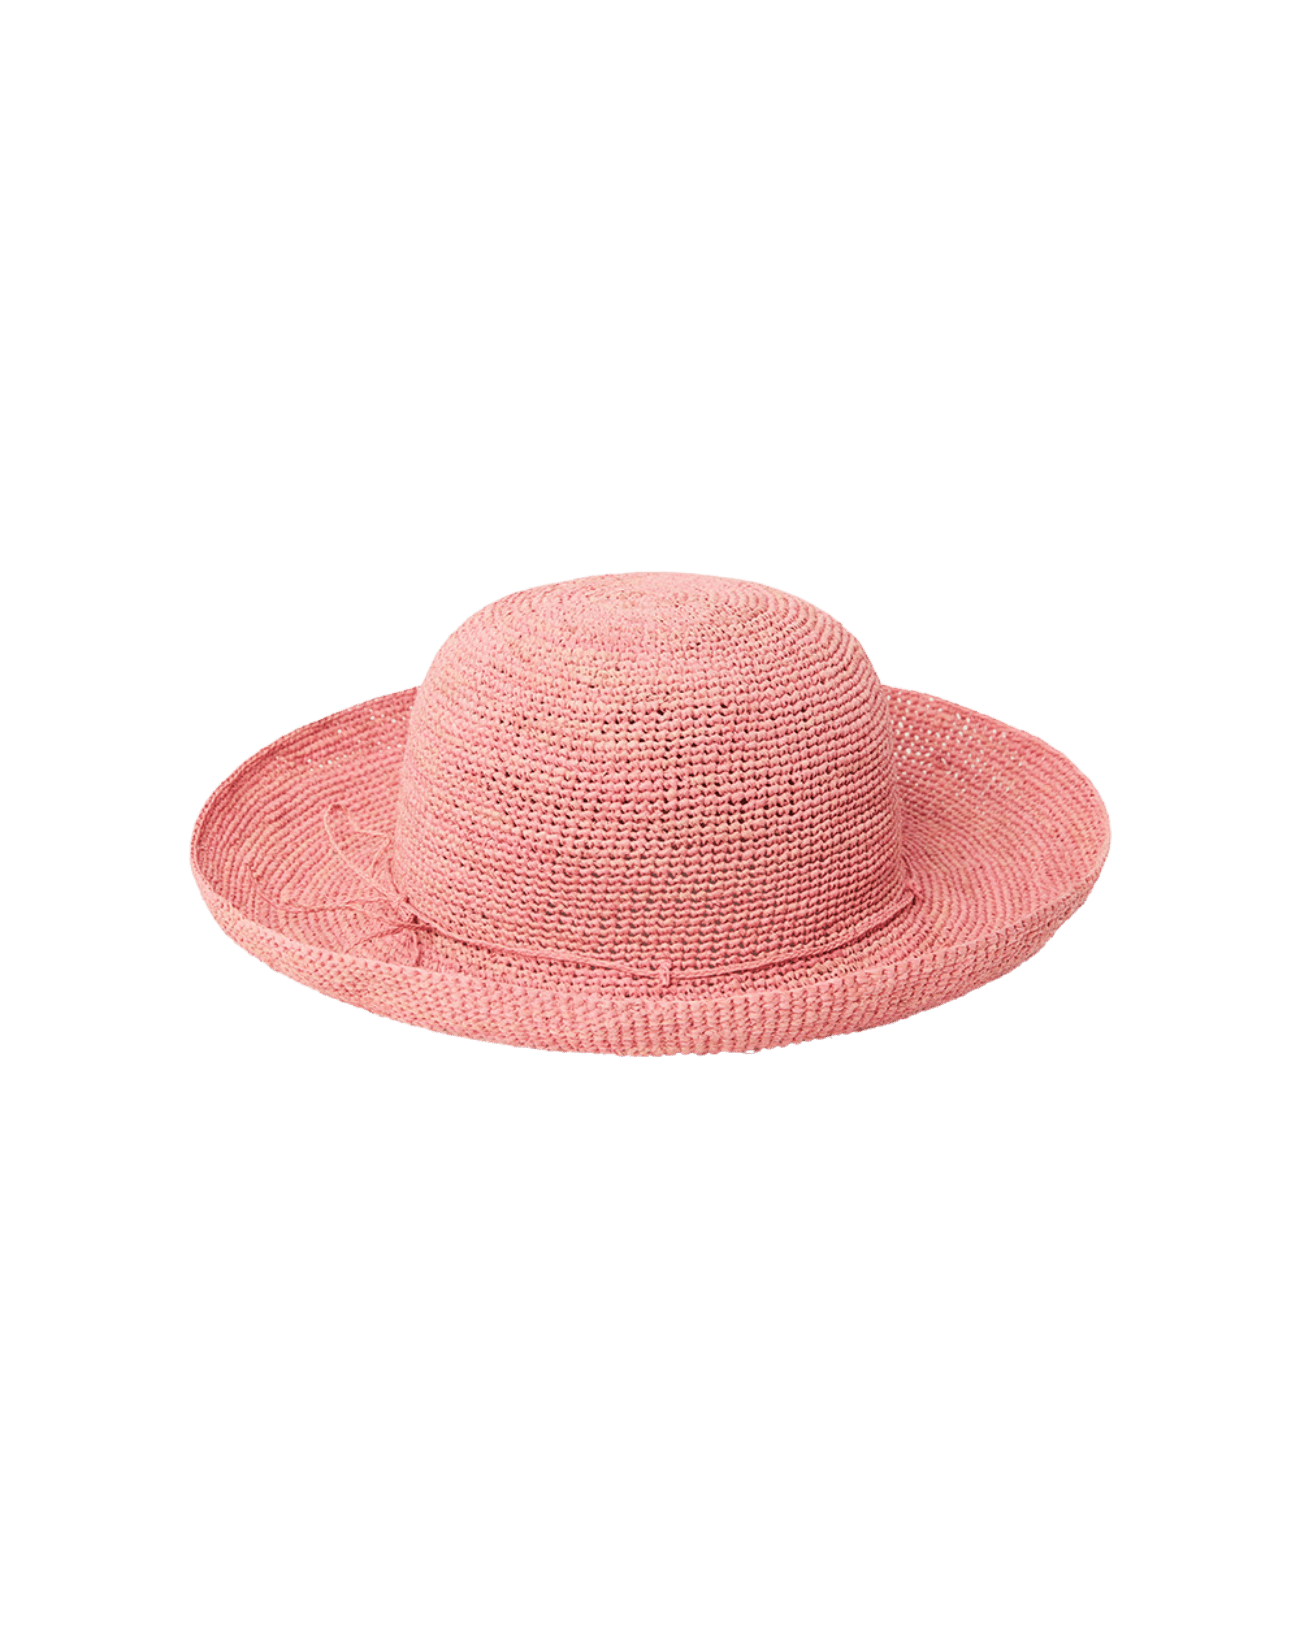 Sasu Escale - Soft accessories - Hats